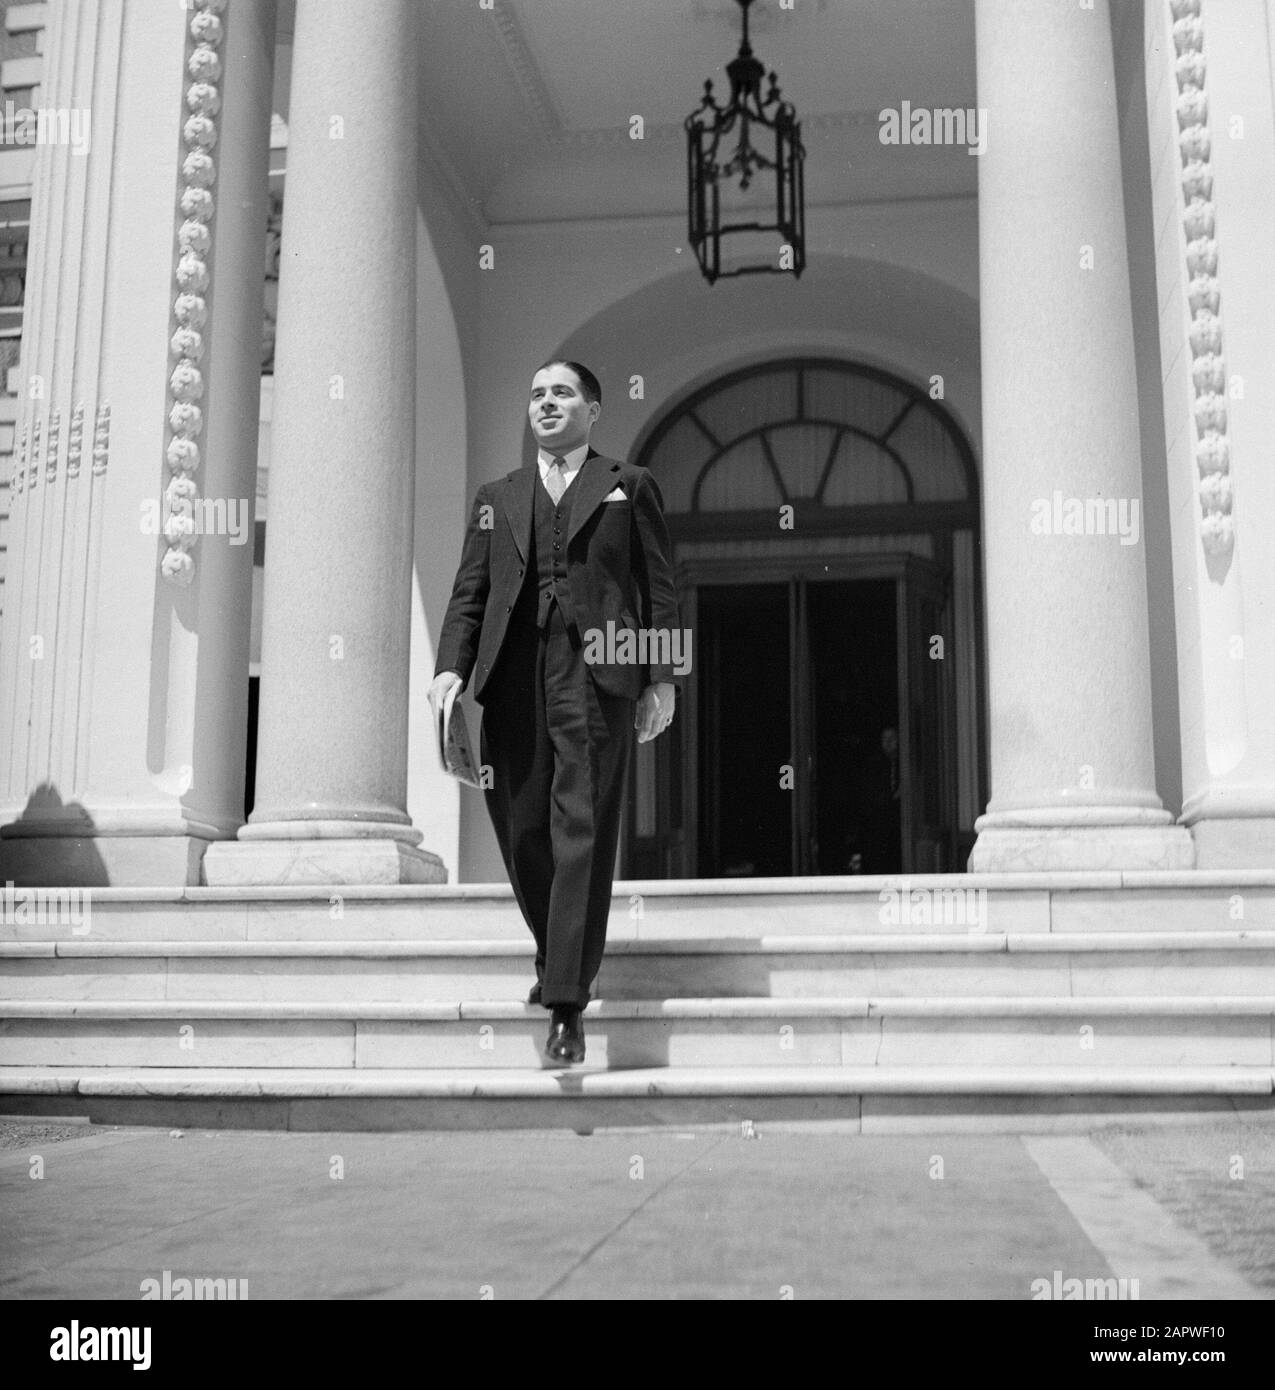 Mariage Man quitte l'entrée majestueuse d'un bâtiment néoclassique Date: 10 mai 1932 lieu: France mots clés: Architecture, fêtes, invités, piliers, portails, portraits, escaliers, éclairage Banque D'Images